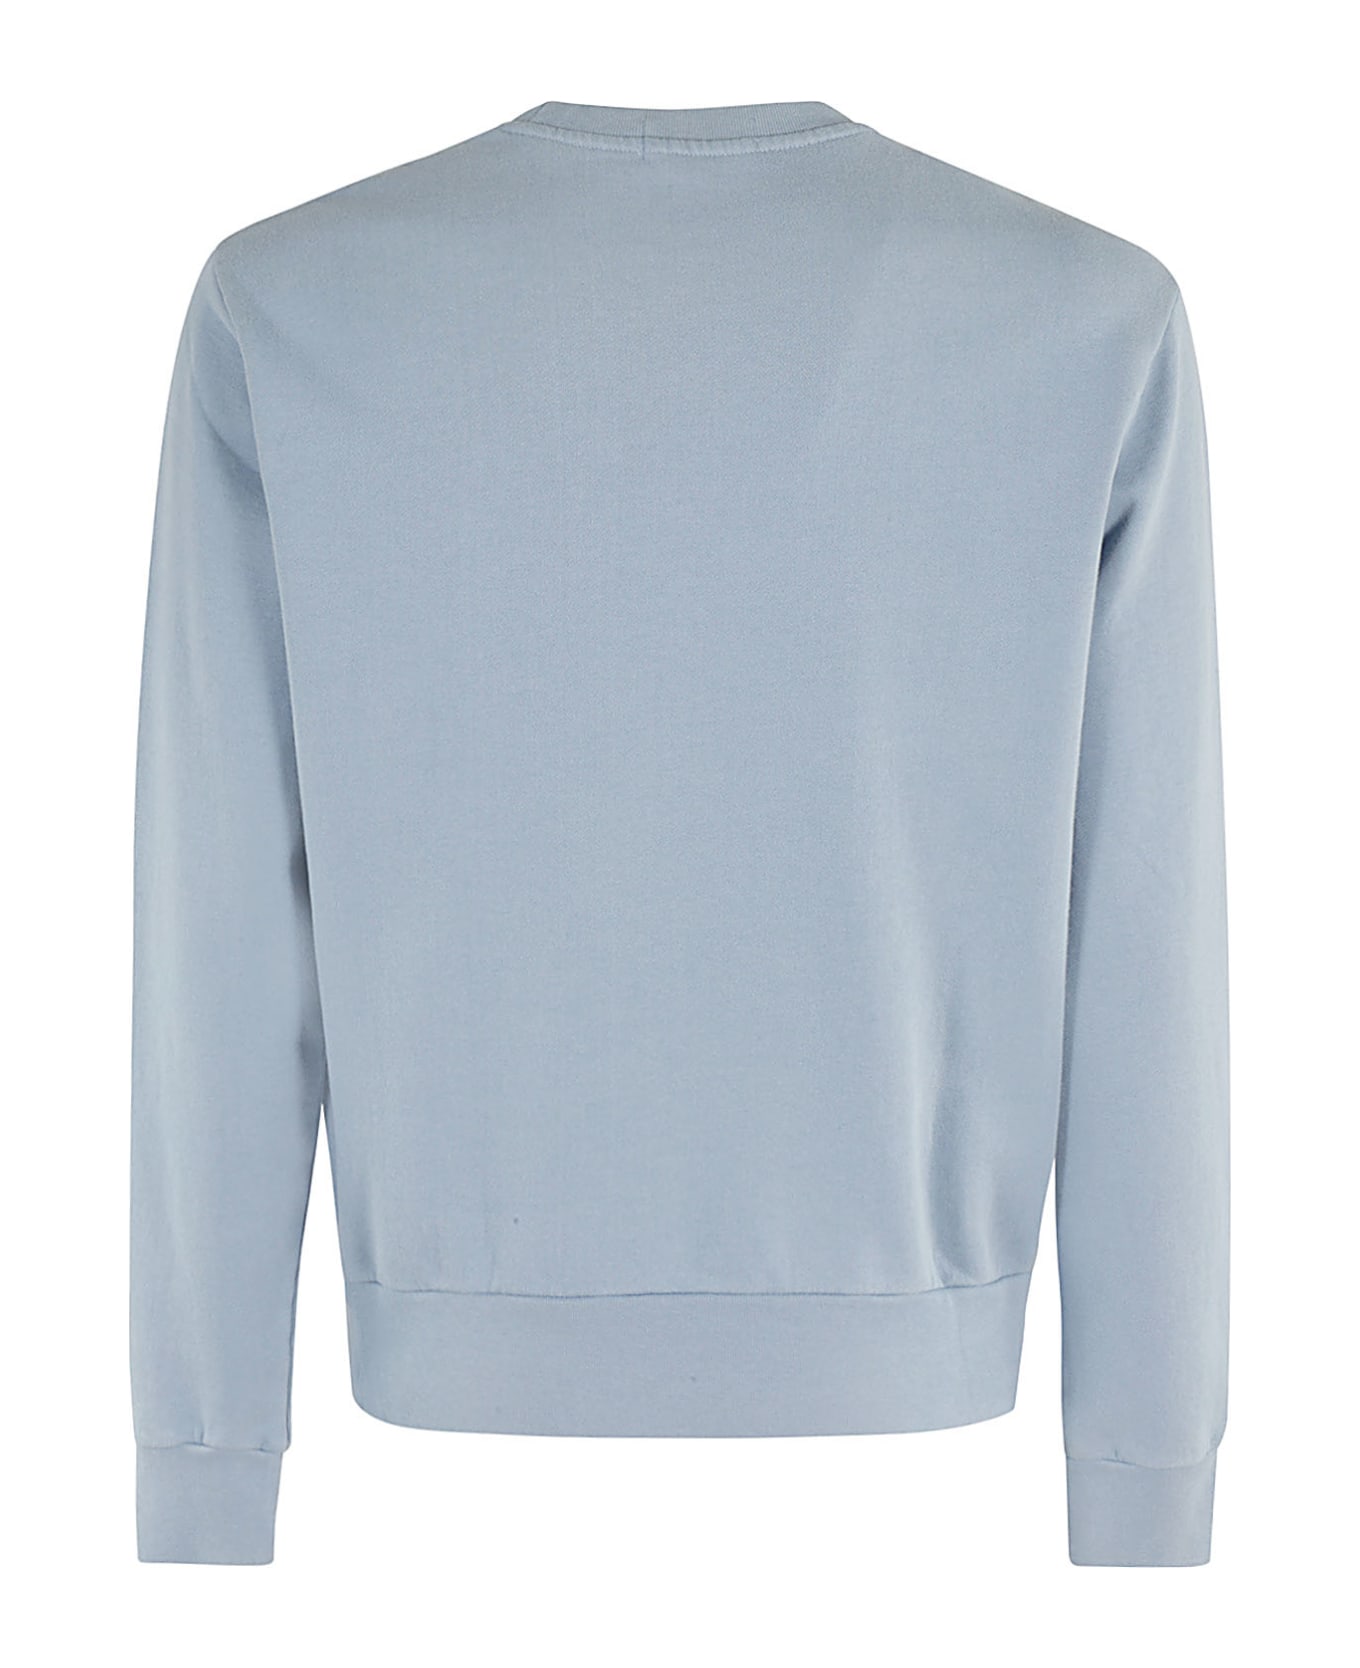 Polo Ralph Lauren Long Sleeve Sweatshirt - Channel Blue フリース